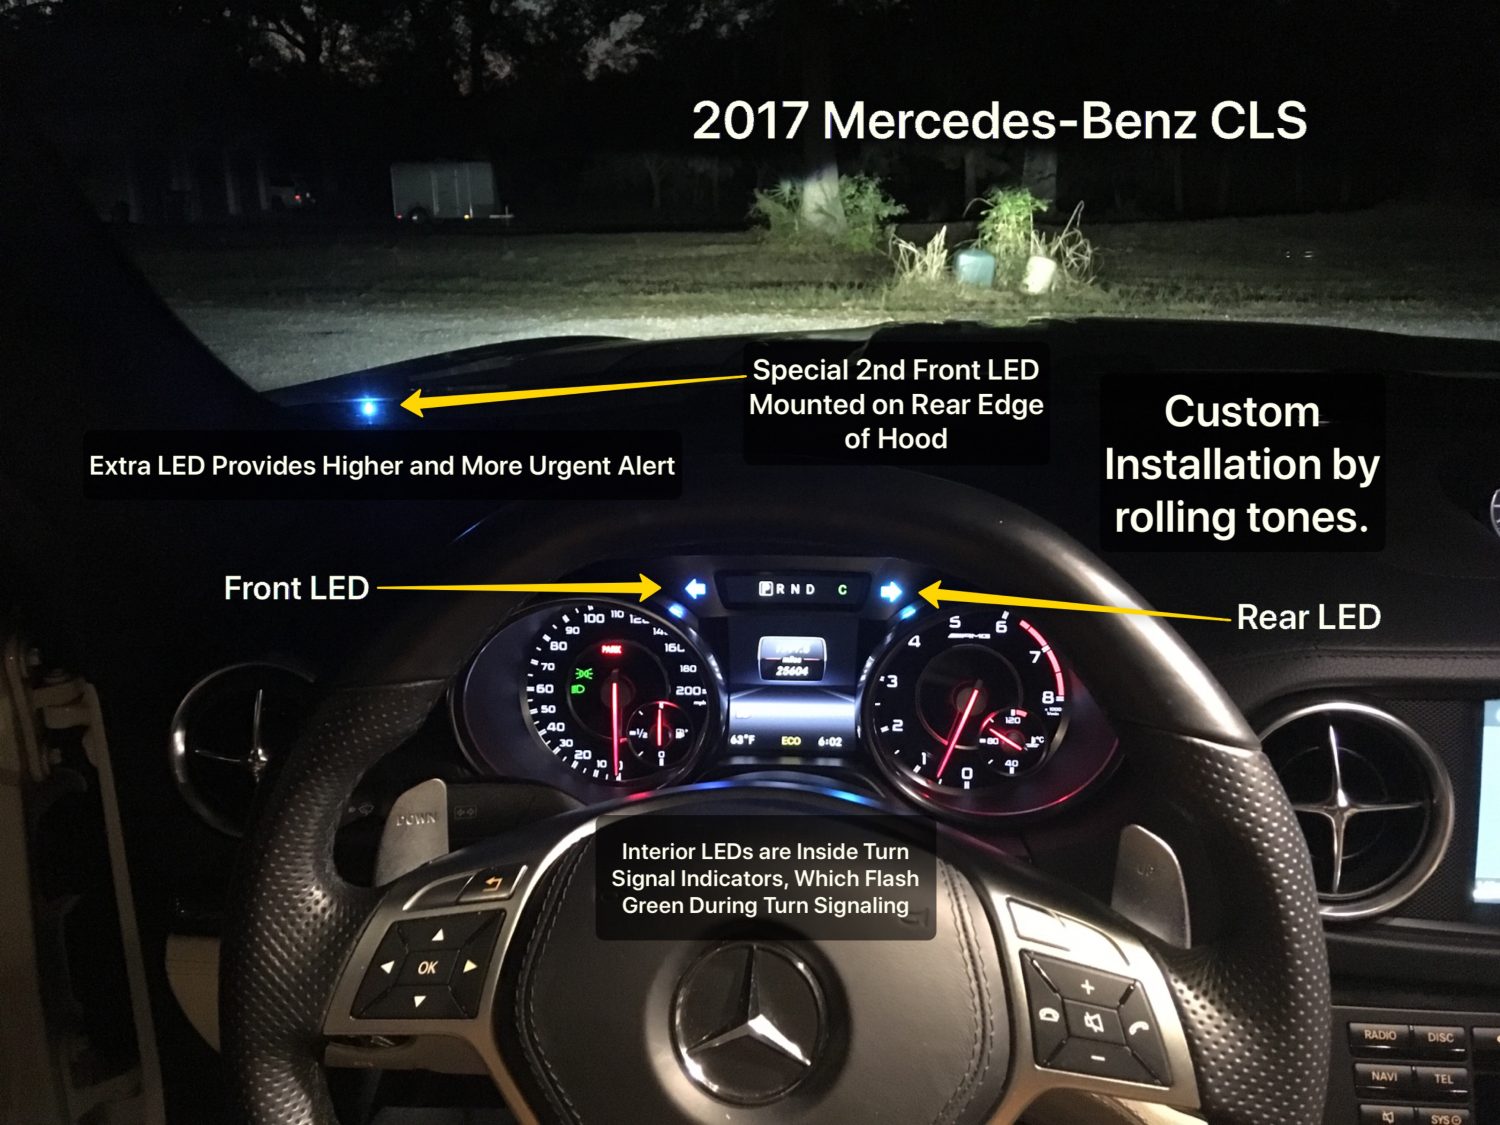 K40 radar detector alert leds on a 2017 Mercedes Benz CLS